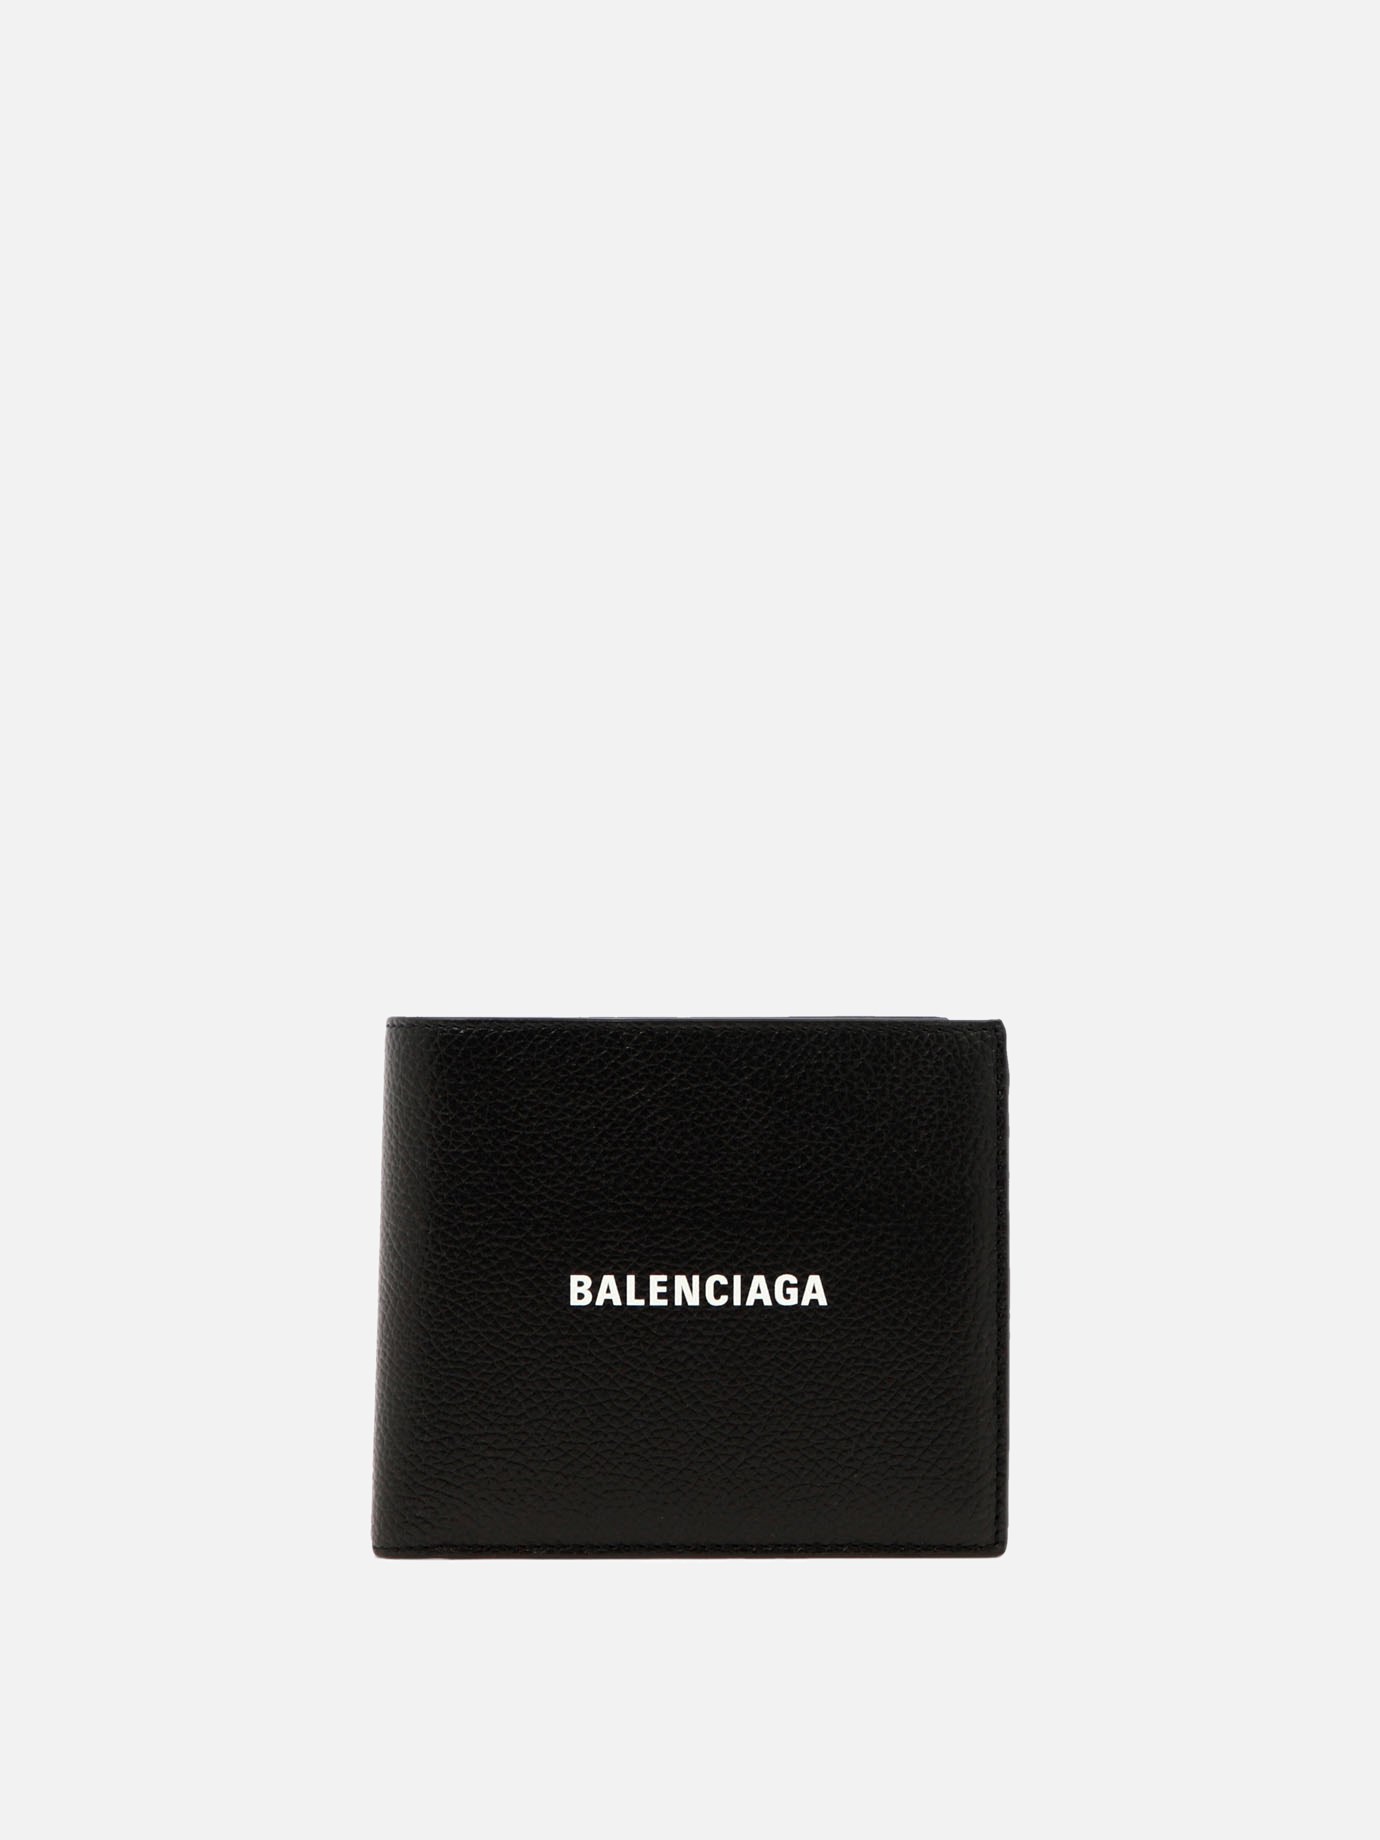  Cash Square Folded Coin  walletby Balenciaga - 0